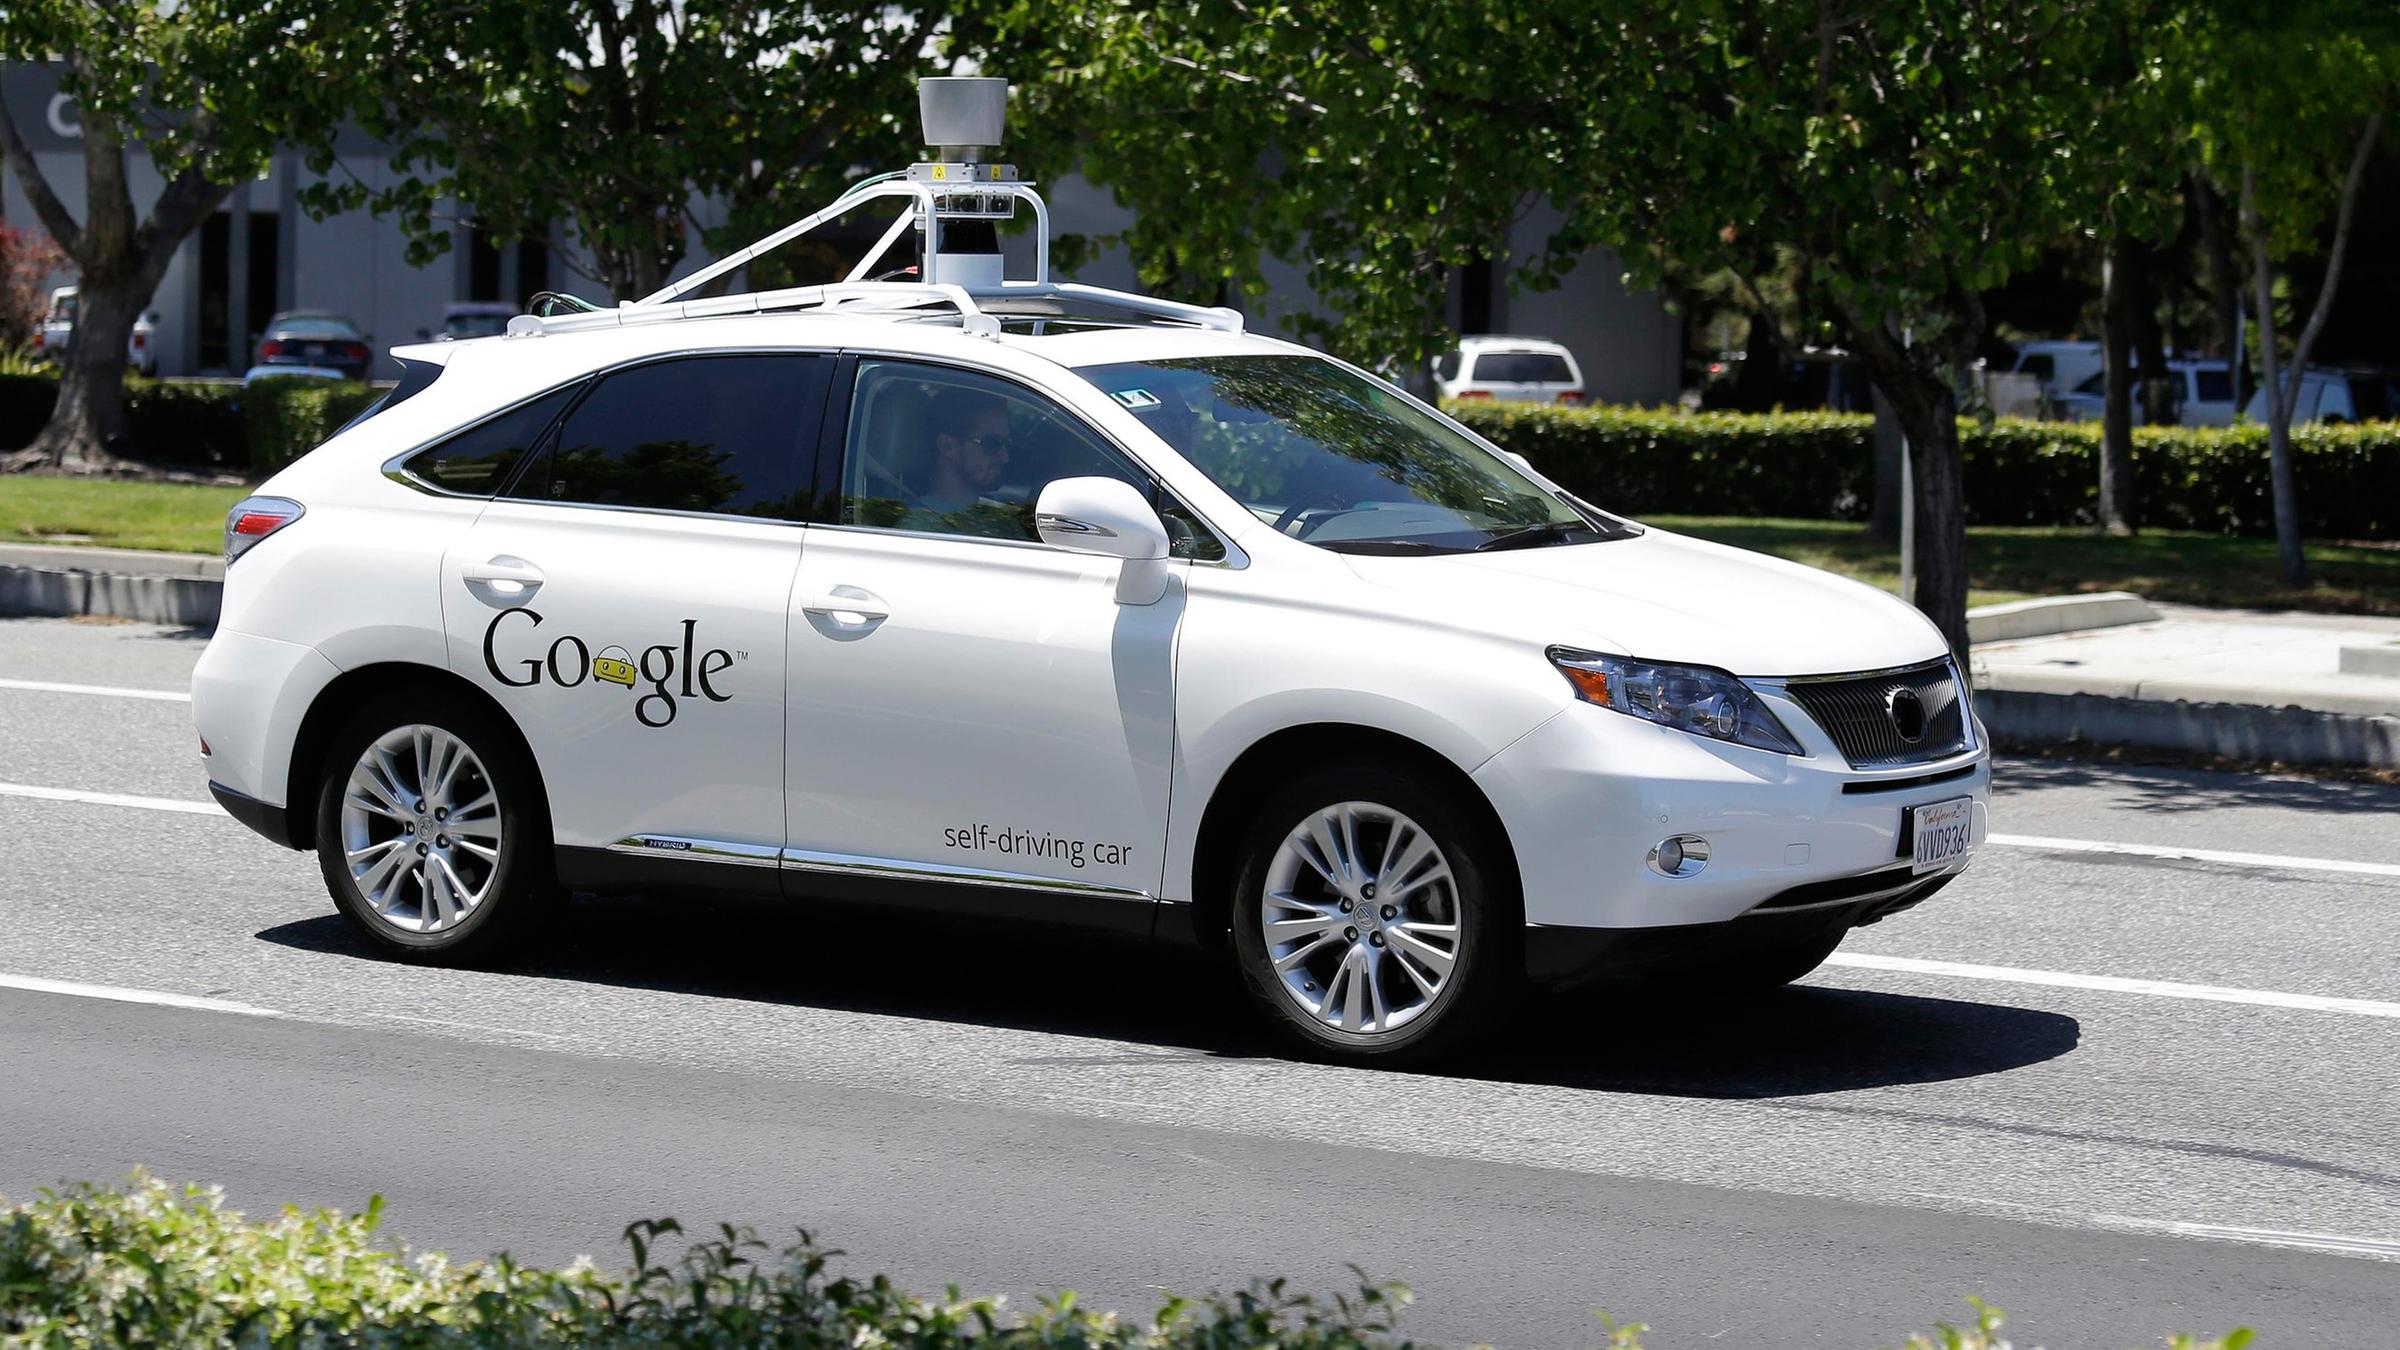 Archiv: Selbstfahrendes Auto von Google auf Testfahrt, aufgenommen am 13.05.2014 in Mountain View (USA)